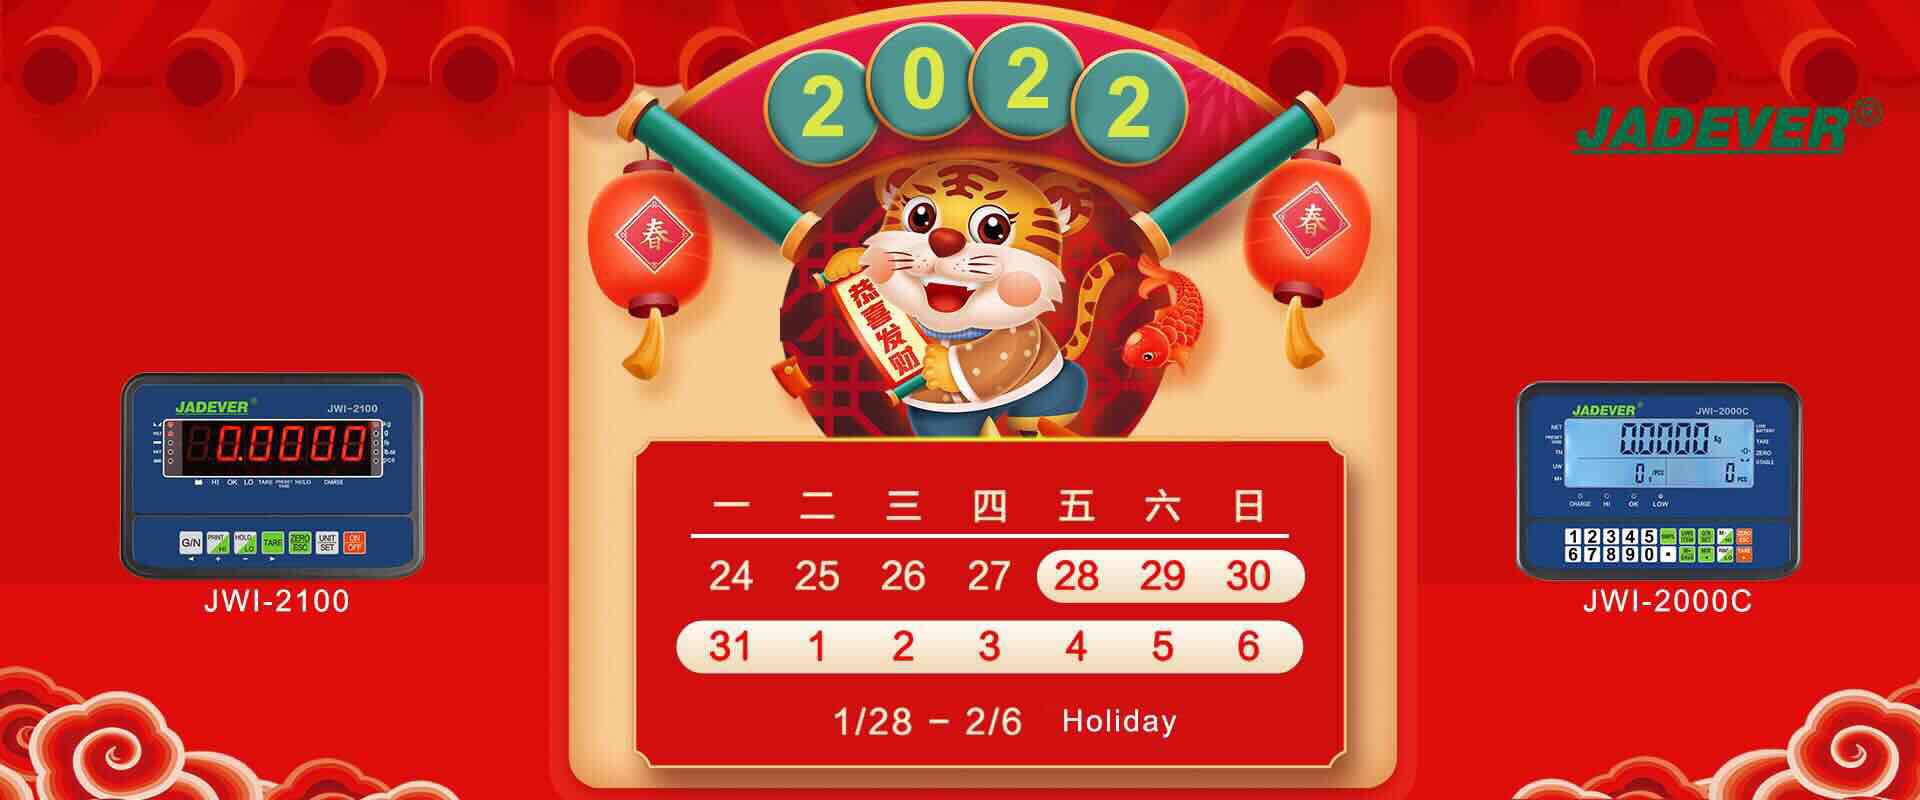 уведомление о празднике - китайский лунный новый год 2022